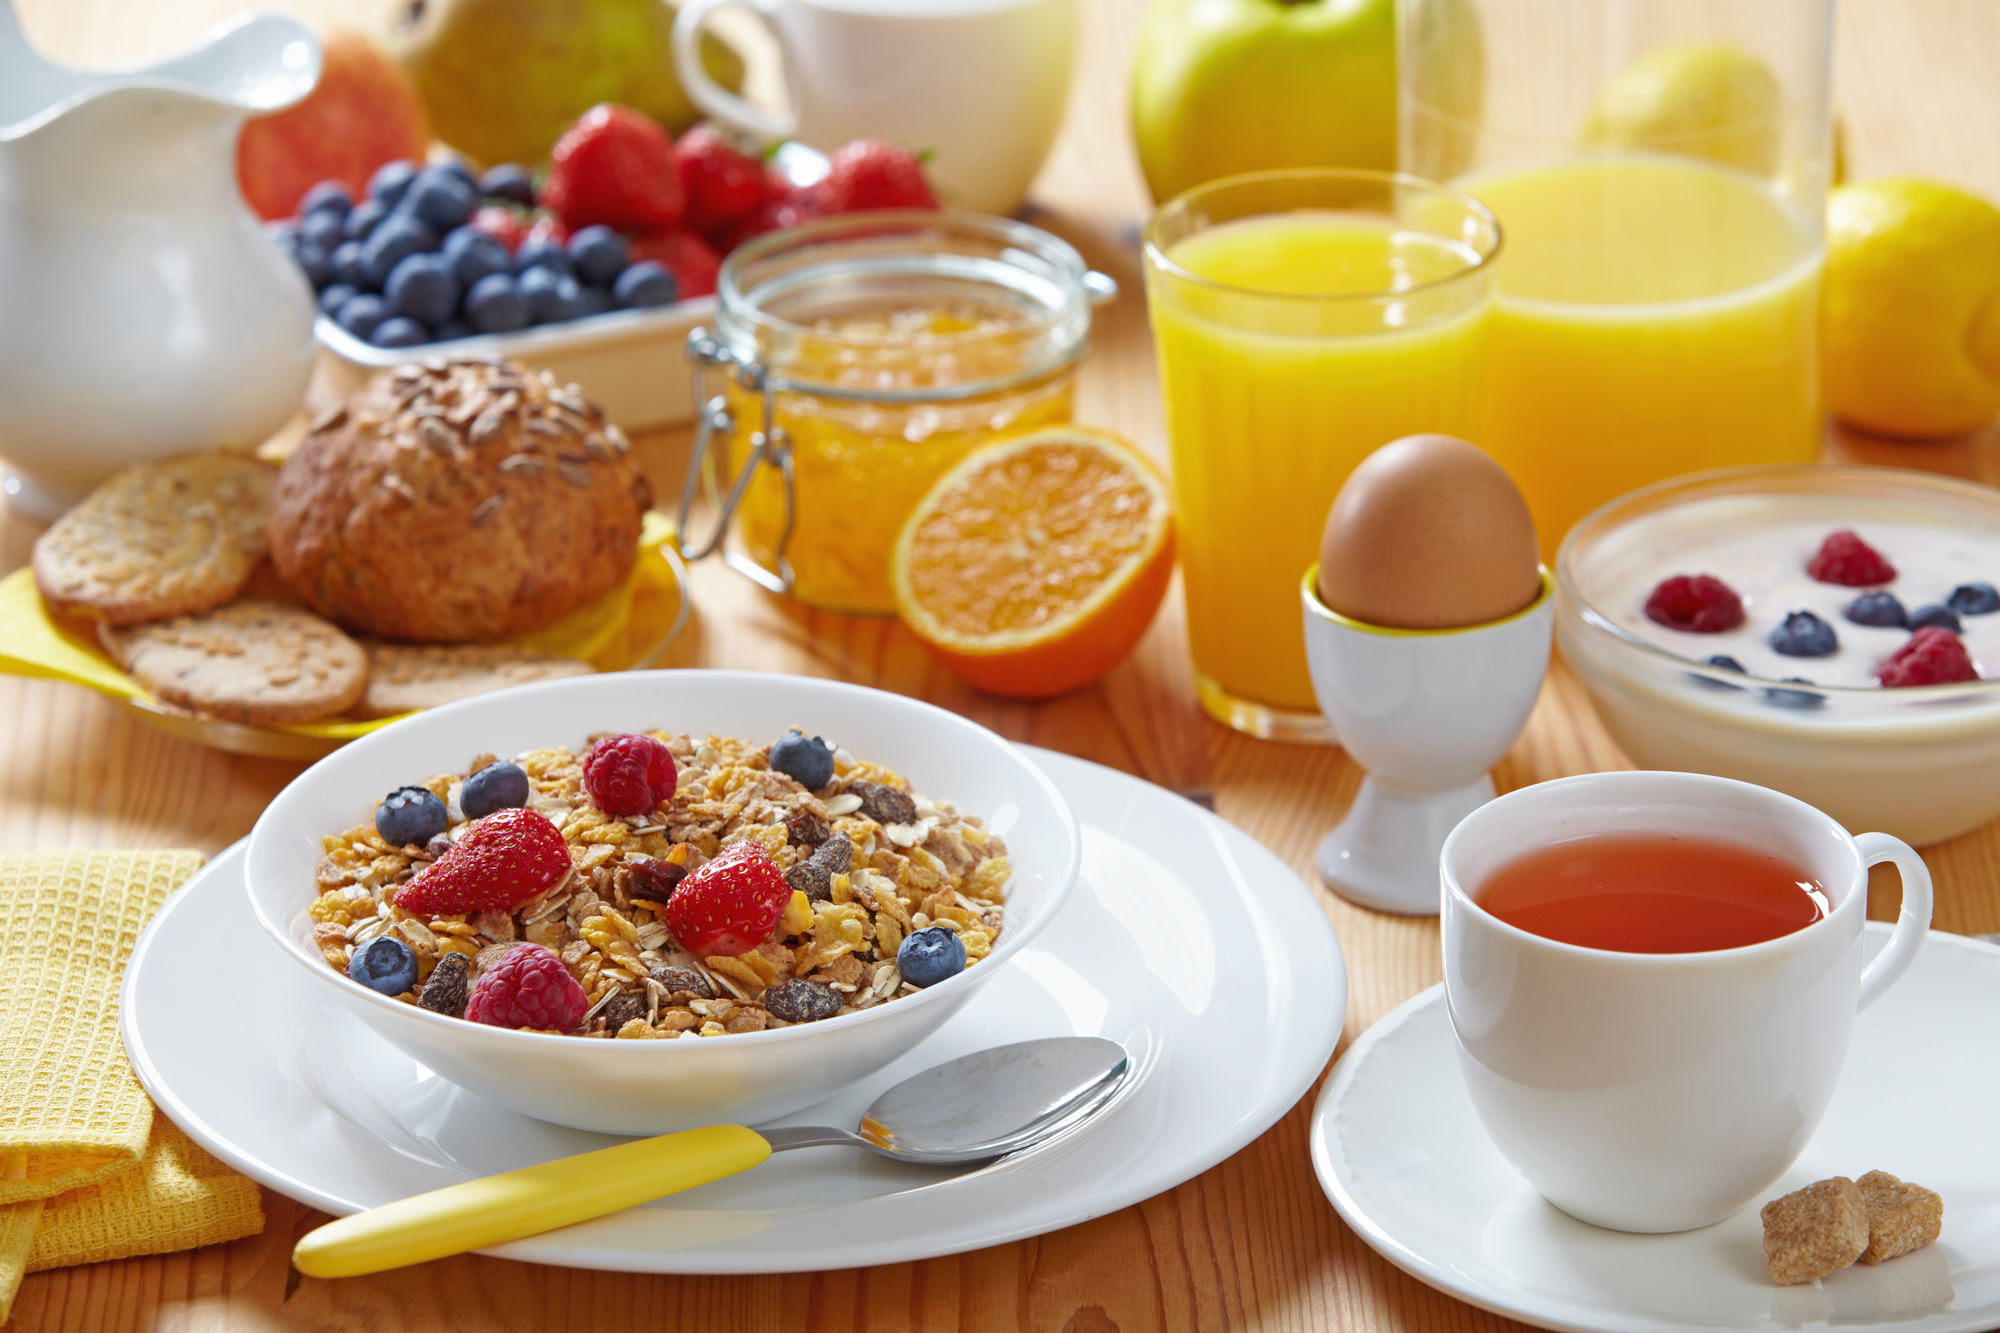 Sund og nærende morgenmad